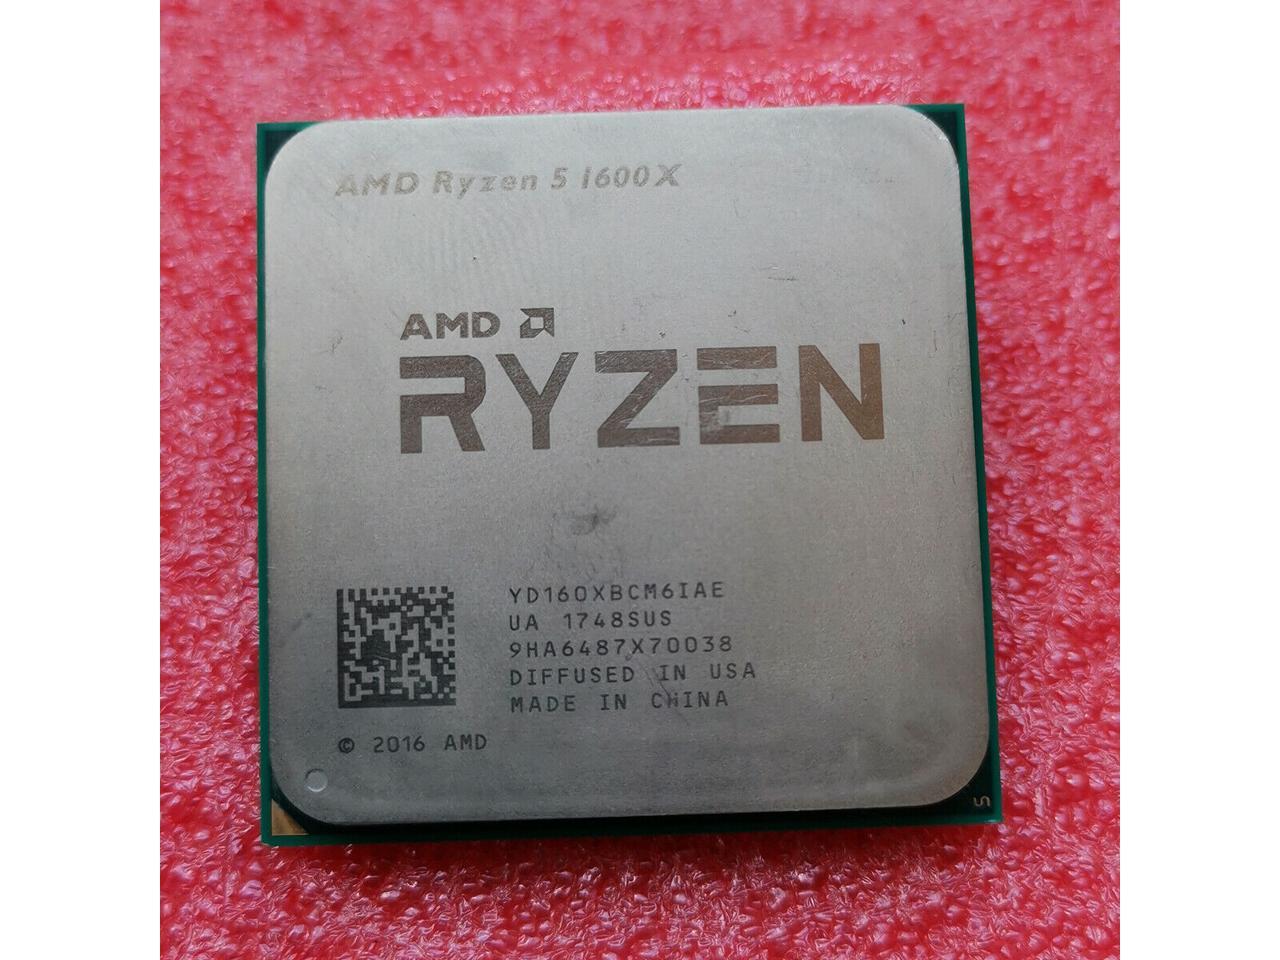 Used - Like New: AMD Ryzen 5 1st Gen - RYZEN 5 1600X Summit Ridge (Zen)  6-Core 3.6 GHz (4.0 GHz Turbo) Socket AM4 95W YD160XBCAEWOF Desktop  Processor - Newegg.com